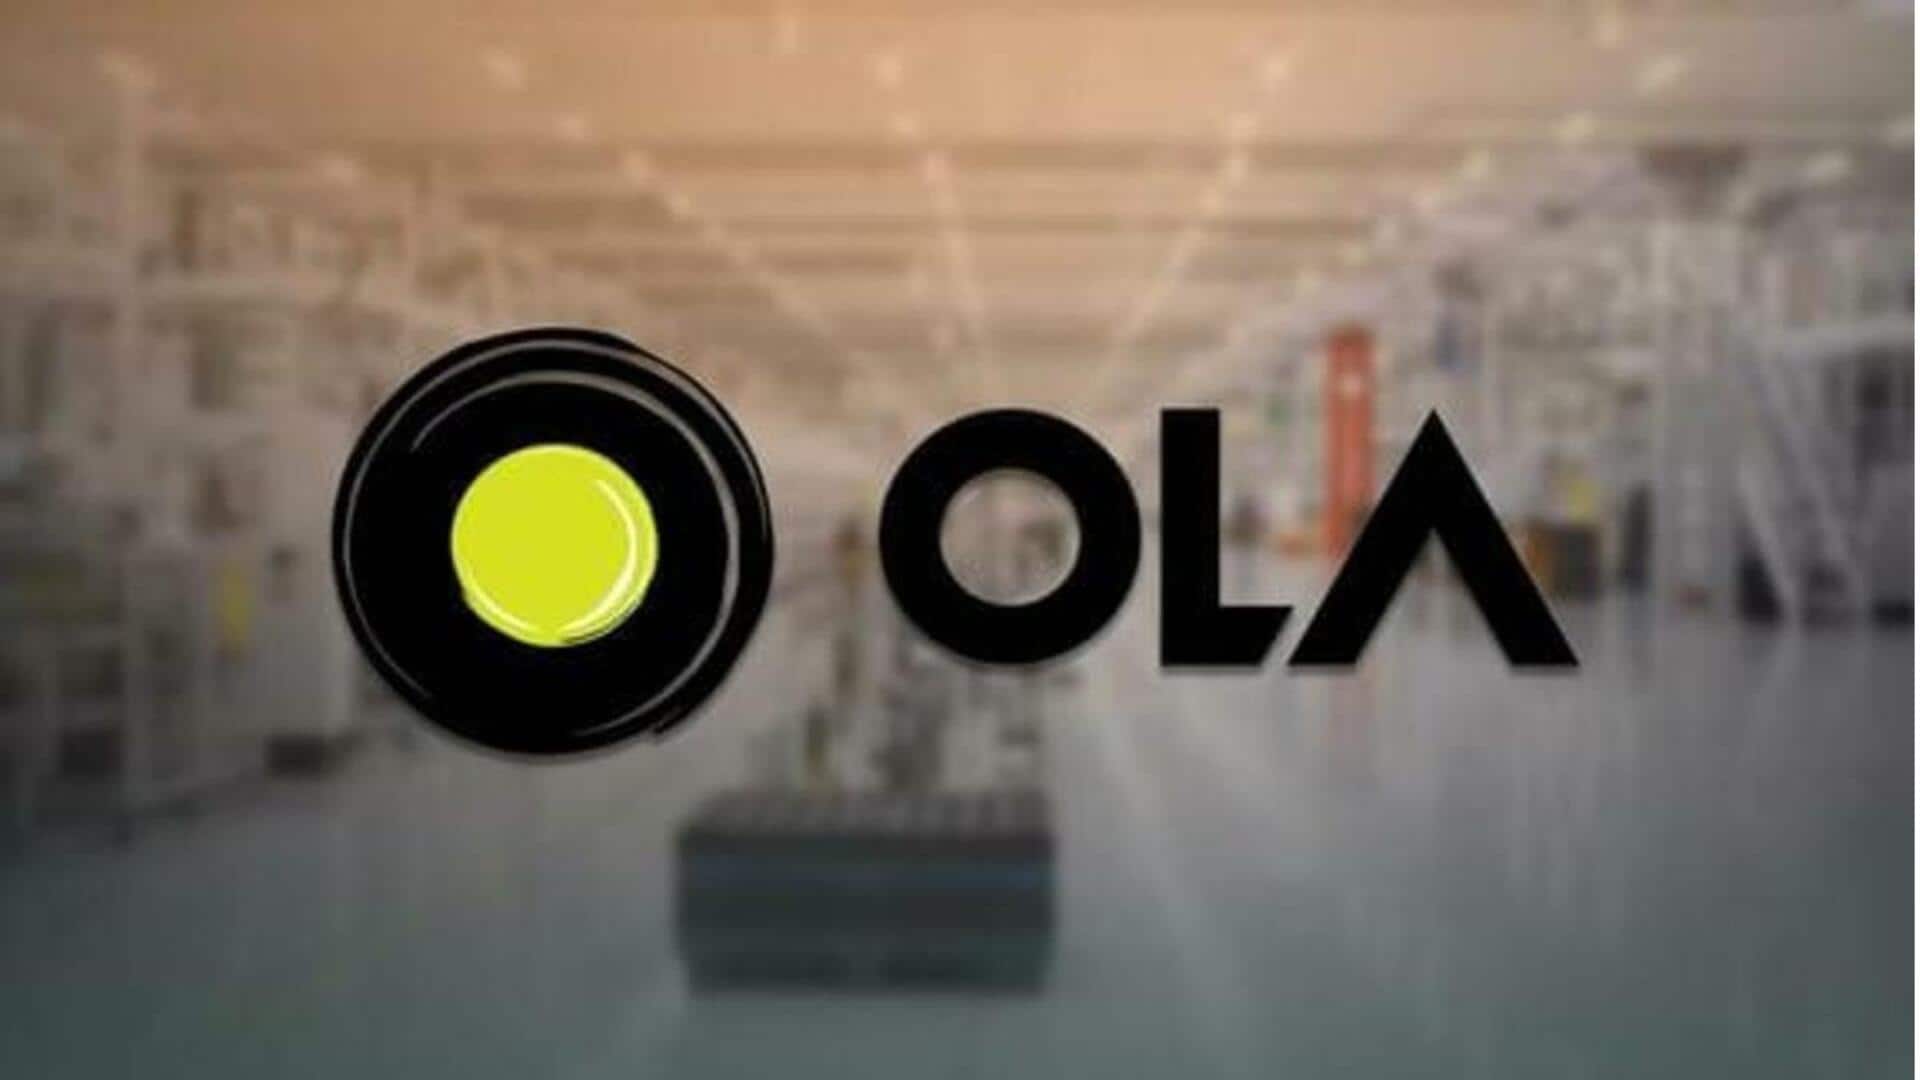 ओला ने अपने स्कूटरों के लिए लॉन्च किया नया इलेक्ट्रिक प्लेटफॉर्म, जानिए इसकी खासियत  